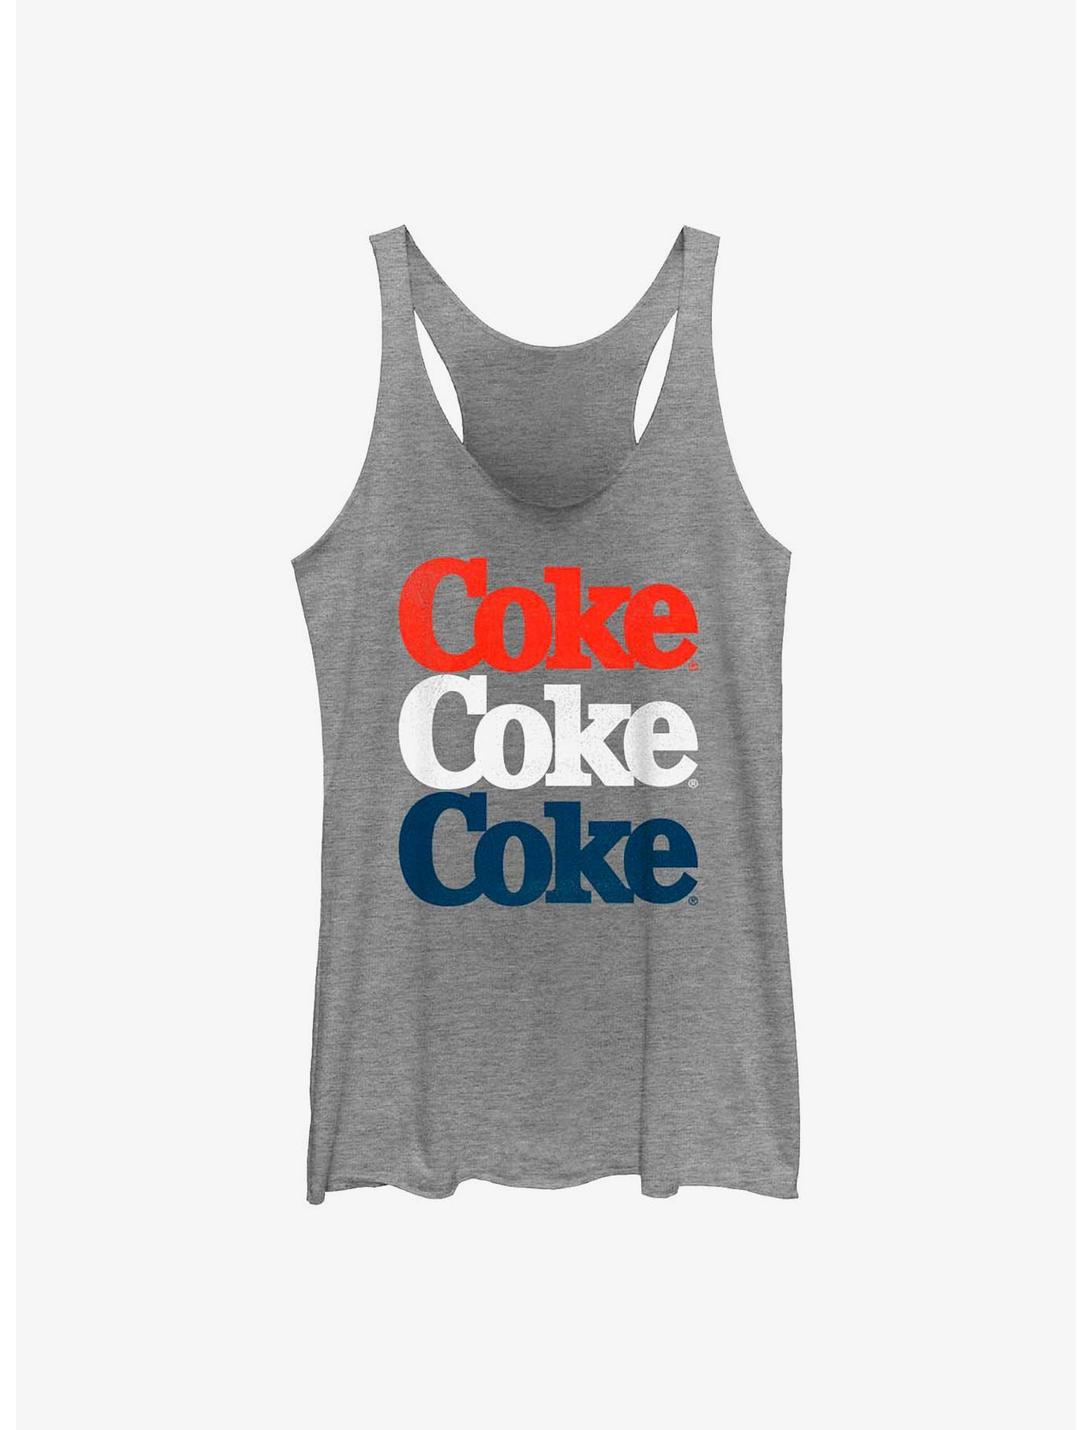 Coca-Cola Coke Americana Three Stack Womens Tank Top, GRAY HTR, hi-res